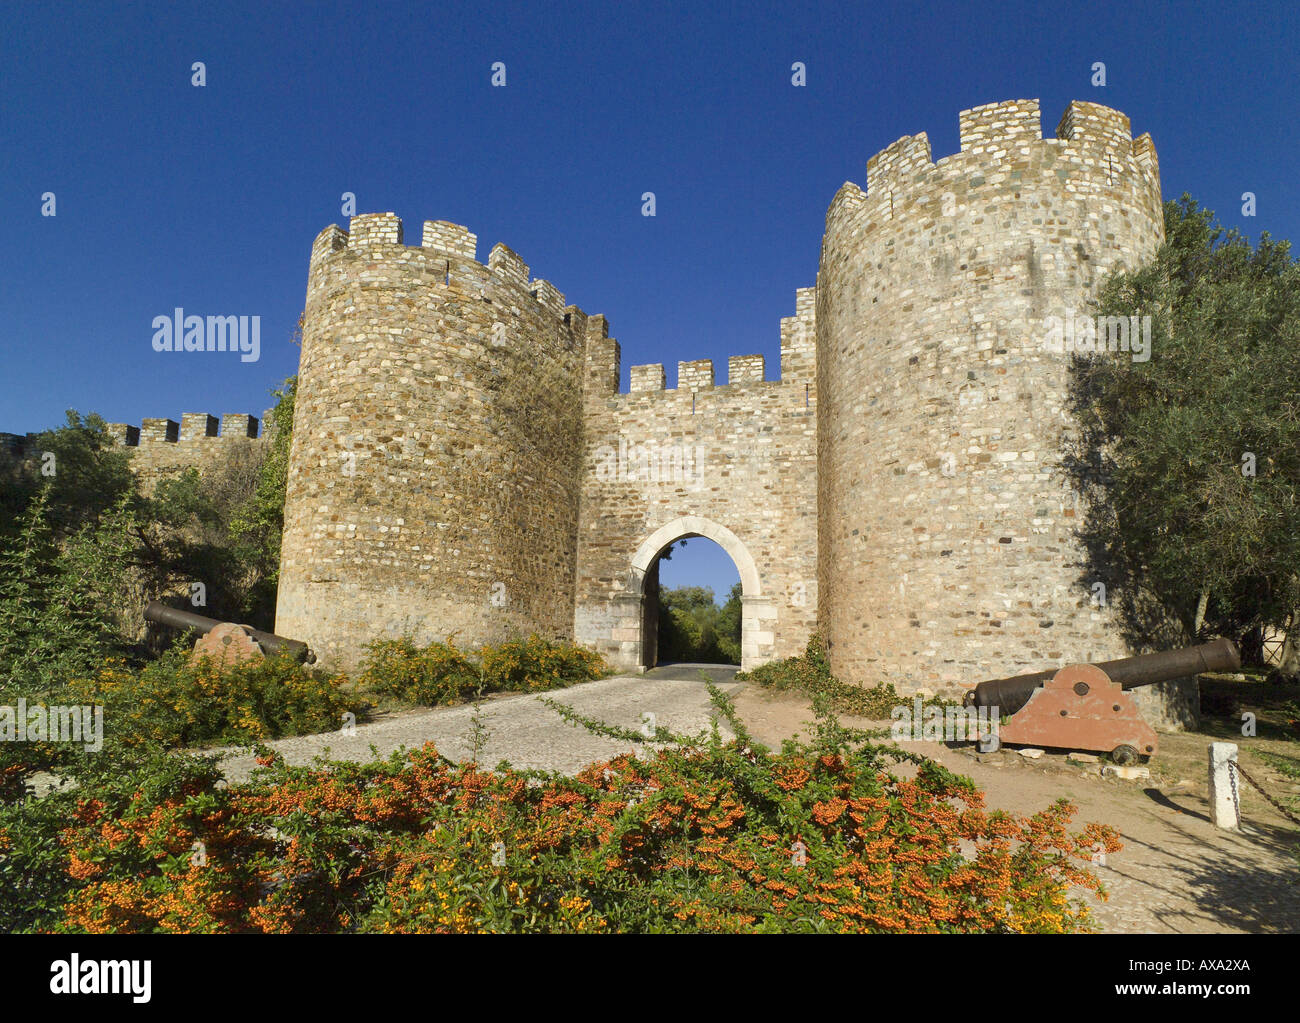 Portugal the Alentejo district, Vila Vicosa Castle entrance Stock Photo